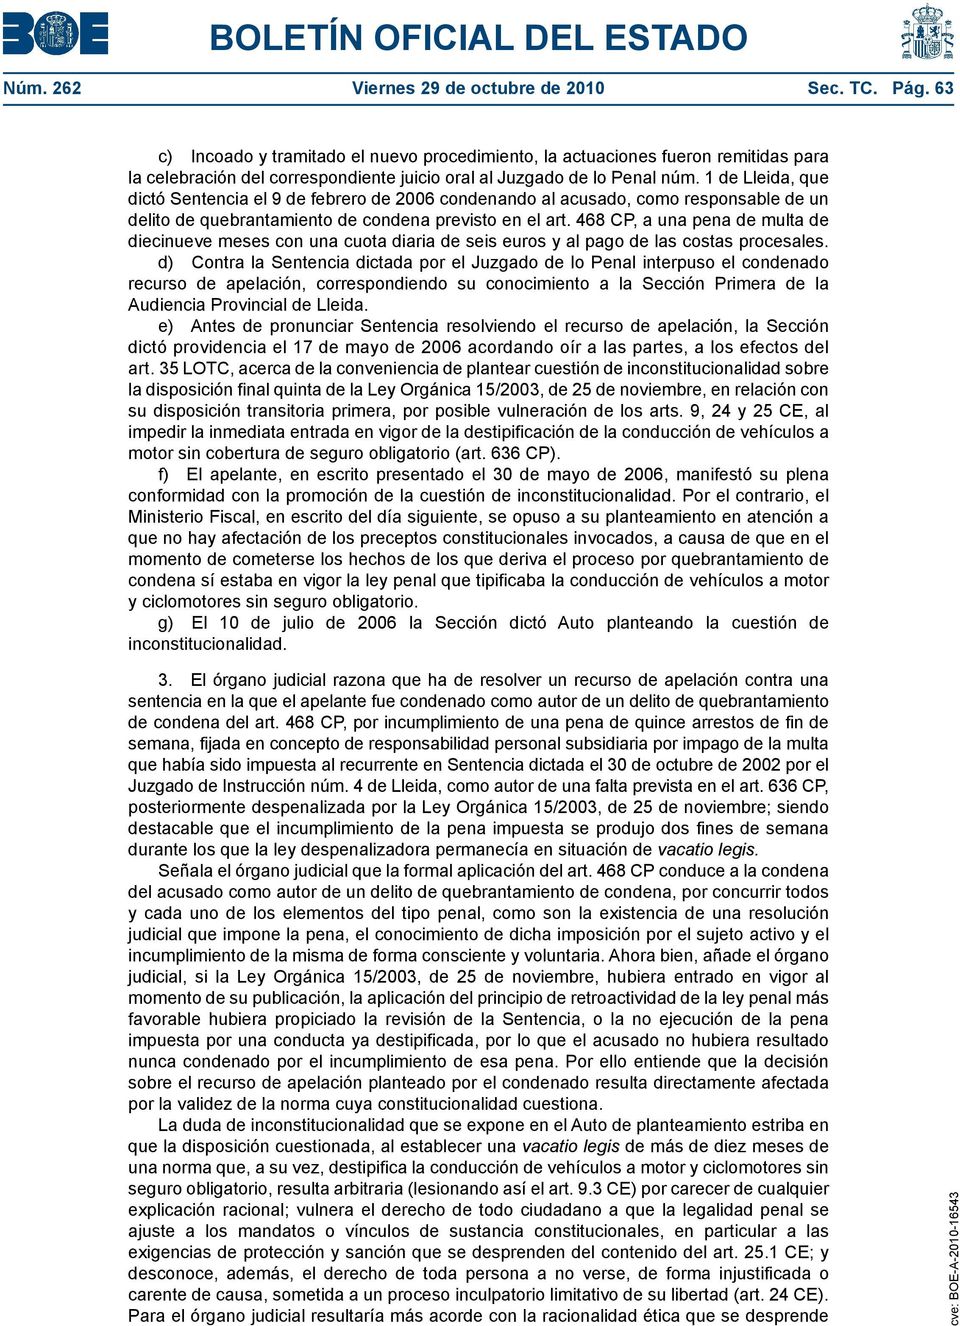 1 de Lleida, que dictó Sentencia el 9 de febrero de 2006 condenando al acusado, como responsable de un delito de quebrantamiento de condena previsto en el art.